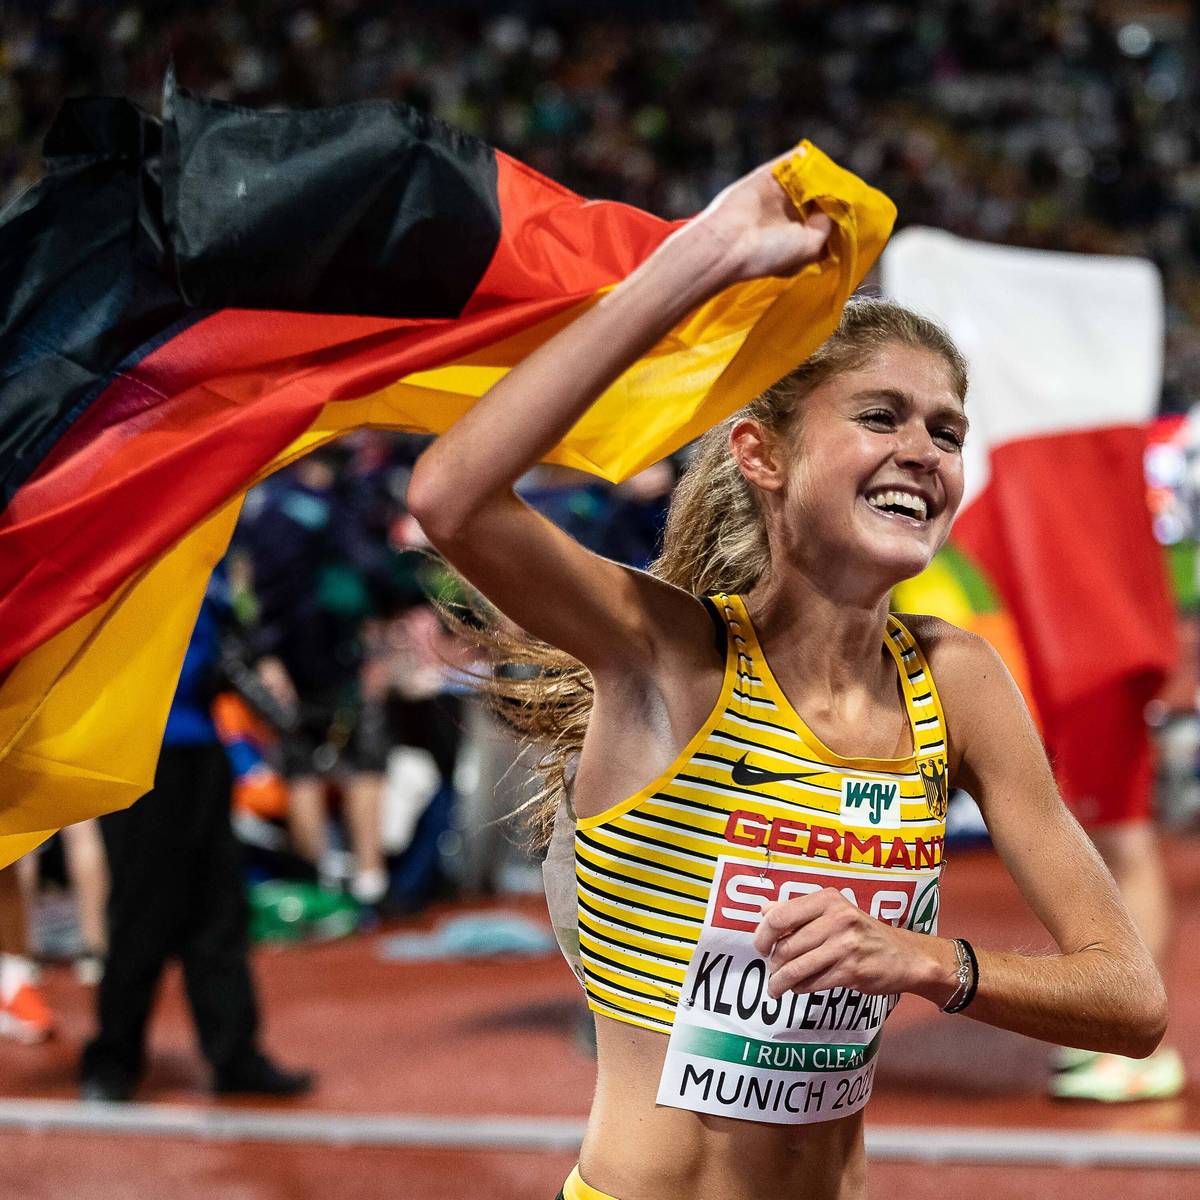 Bei den European Championships 2022 in München werden in neun Sportarten Medaillen vergeben. SPORT1 gibt einen Überblick über den aktuellen Medaillenspiegel.